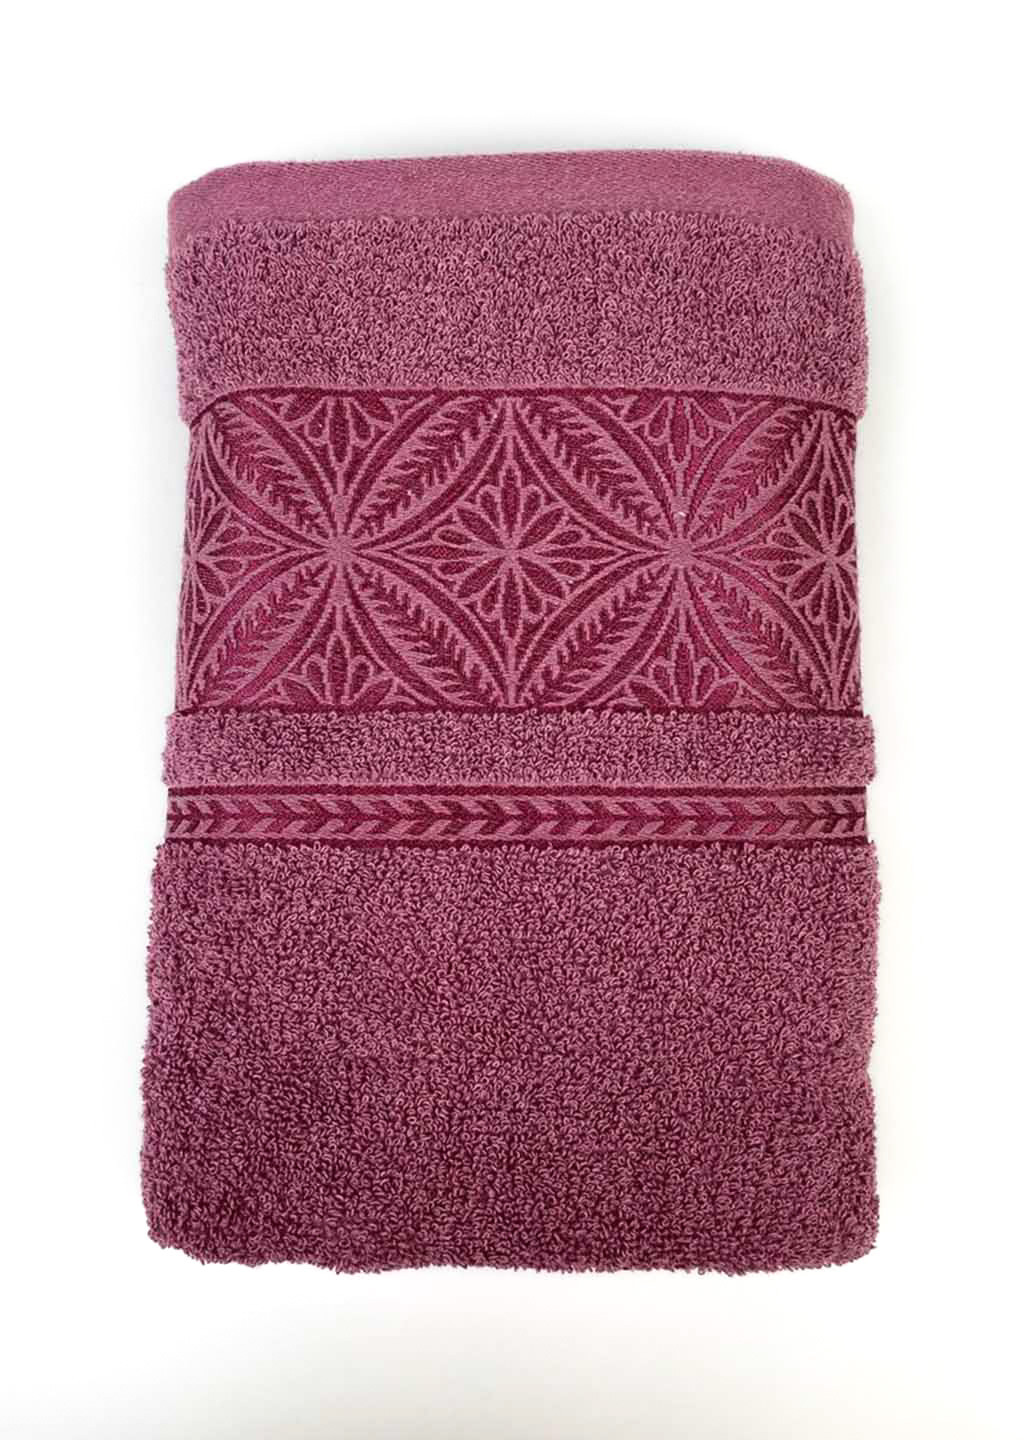 Homedec полотенце банное махровое 140х70 см однотонный темно-розовый производство - Турция